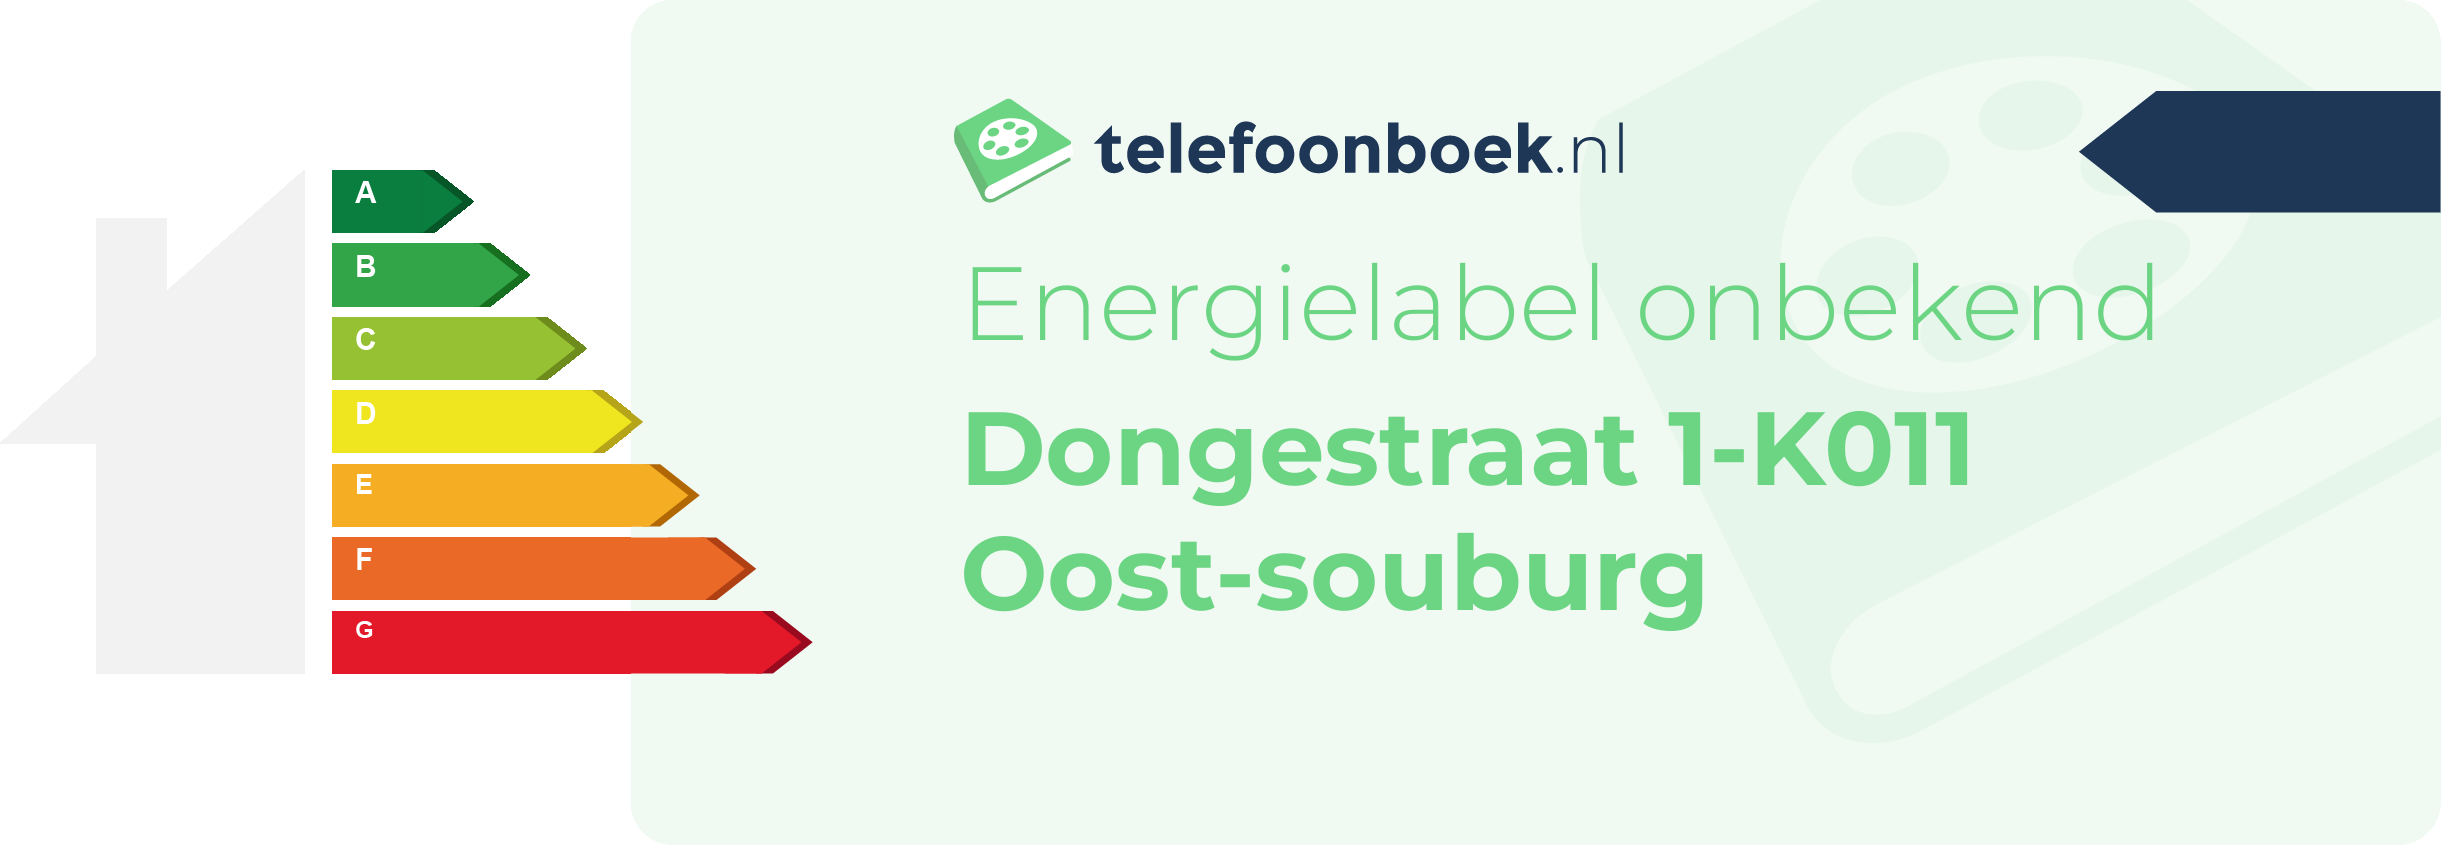 Energielabel Dongestraat 1-K011 Oost-Souburg